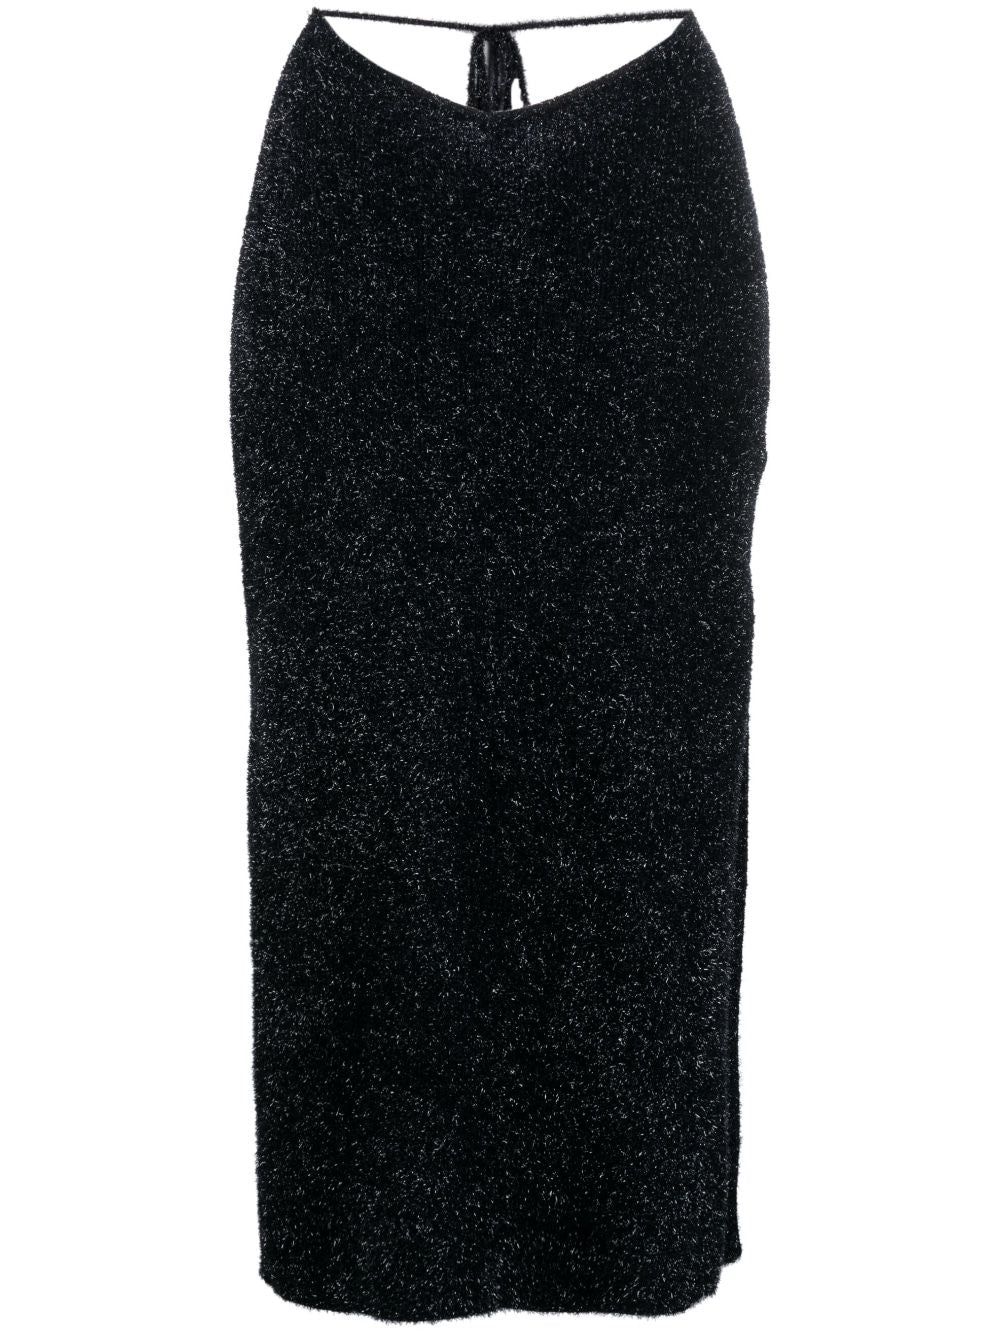 ROTATE Birger Christensen Glitter Knit Maxi Dress - Maxi dresses 